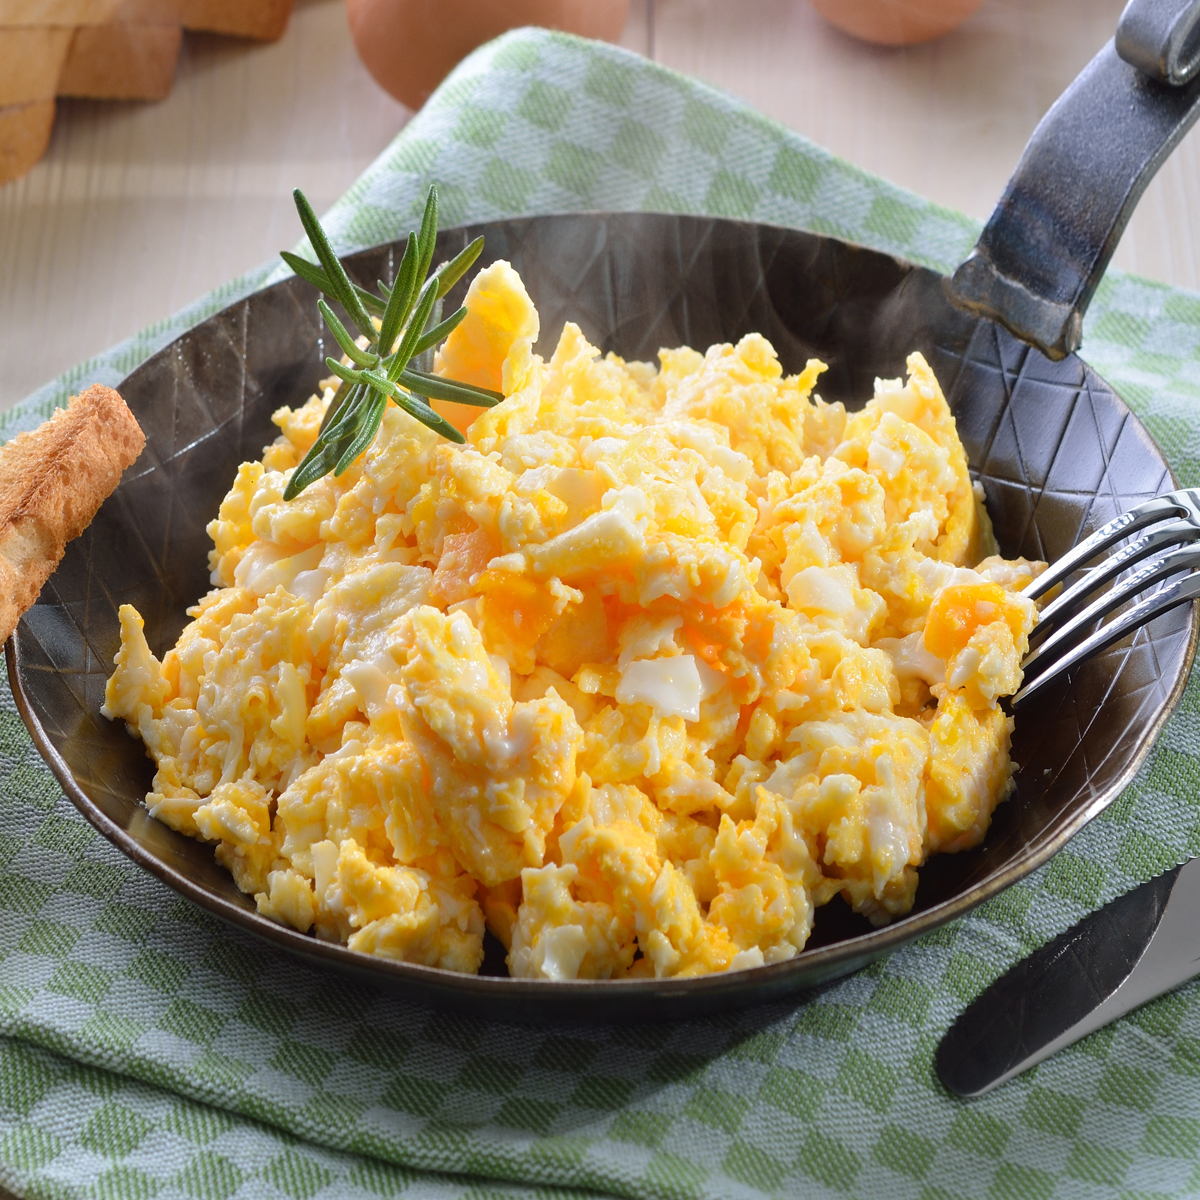 https://www.livingonadime.com/wp-content/uploads/easy-scrambled-eggs-recipe-tr.jpg